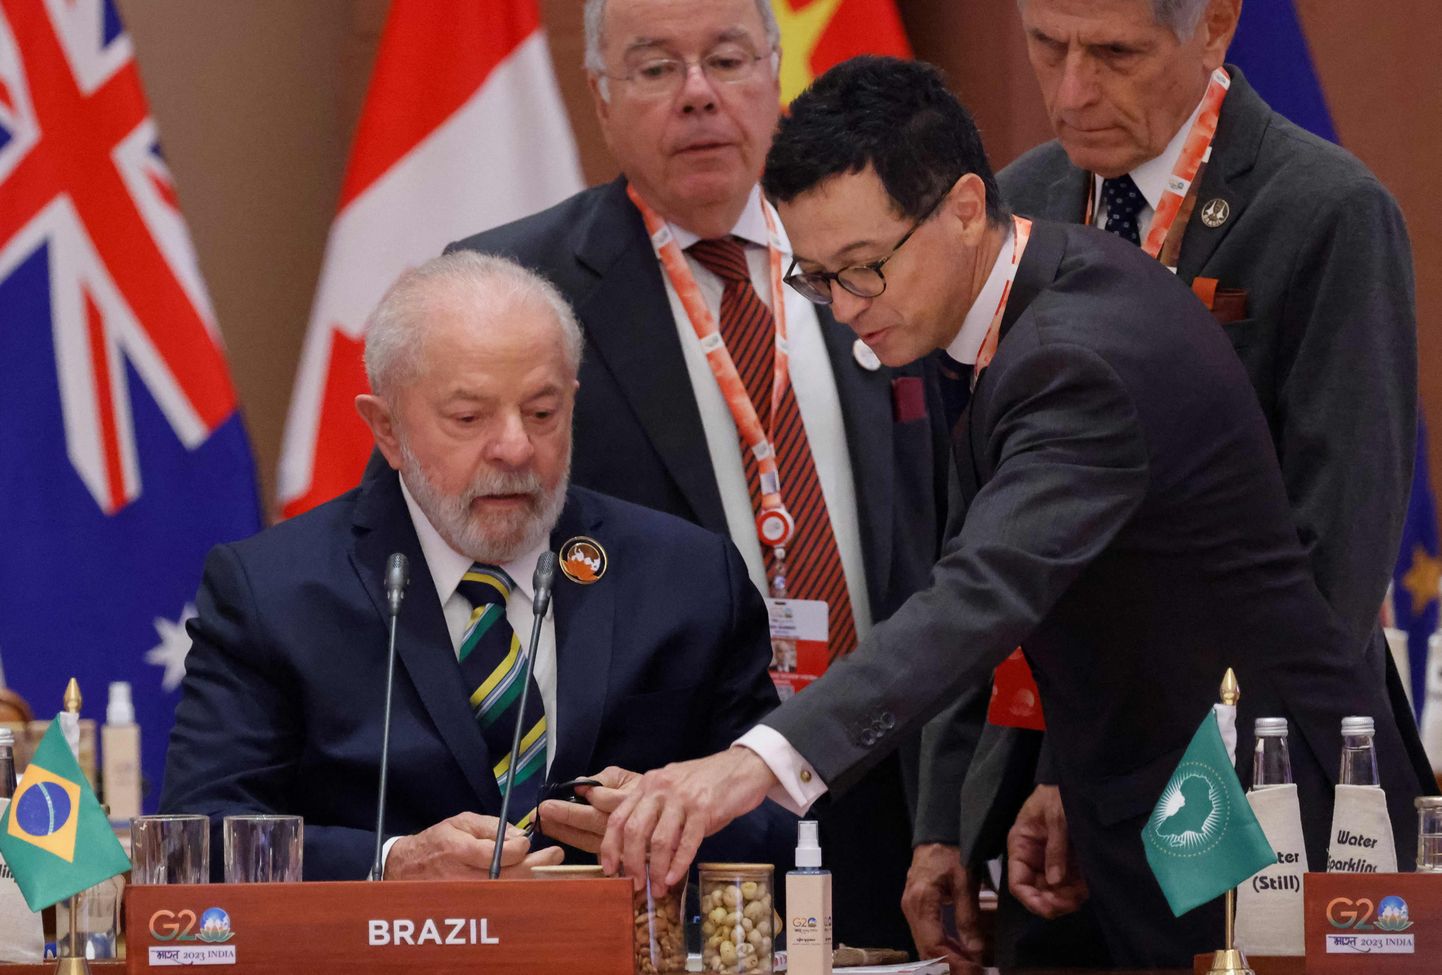 Brazīlijas prezidents Luiss Inasiu Lula da Silva G20 sanāksmē Indijā